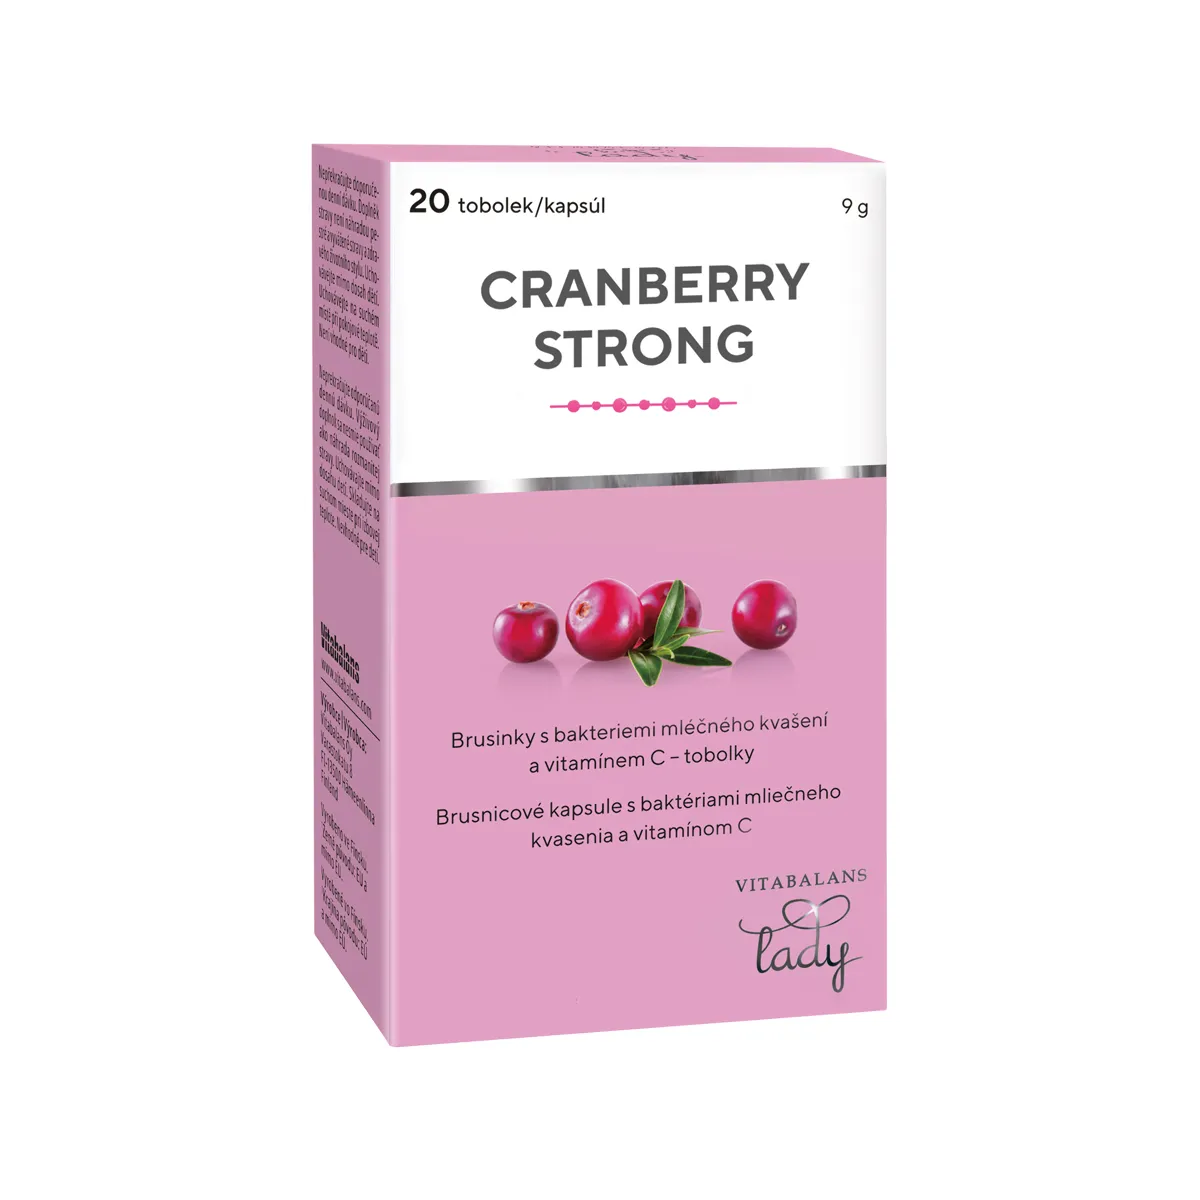 Cranberry Strong 1×20 cps, Brusnicové kapsuly s baktériami mliečneho kvasenia a vitamínom C.